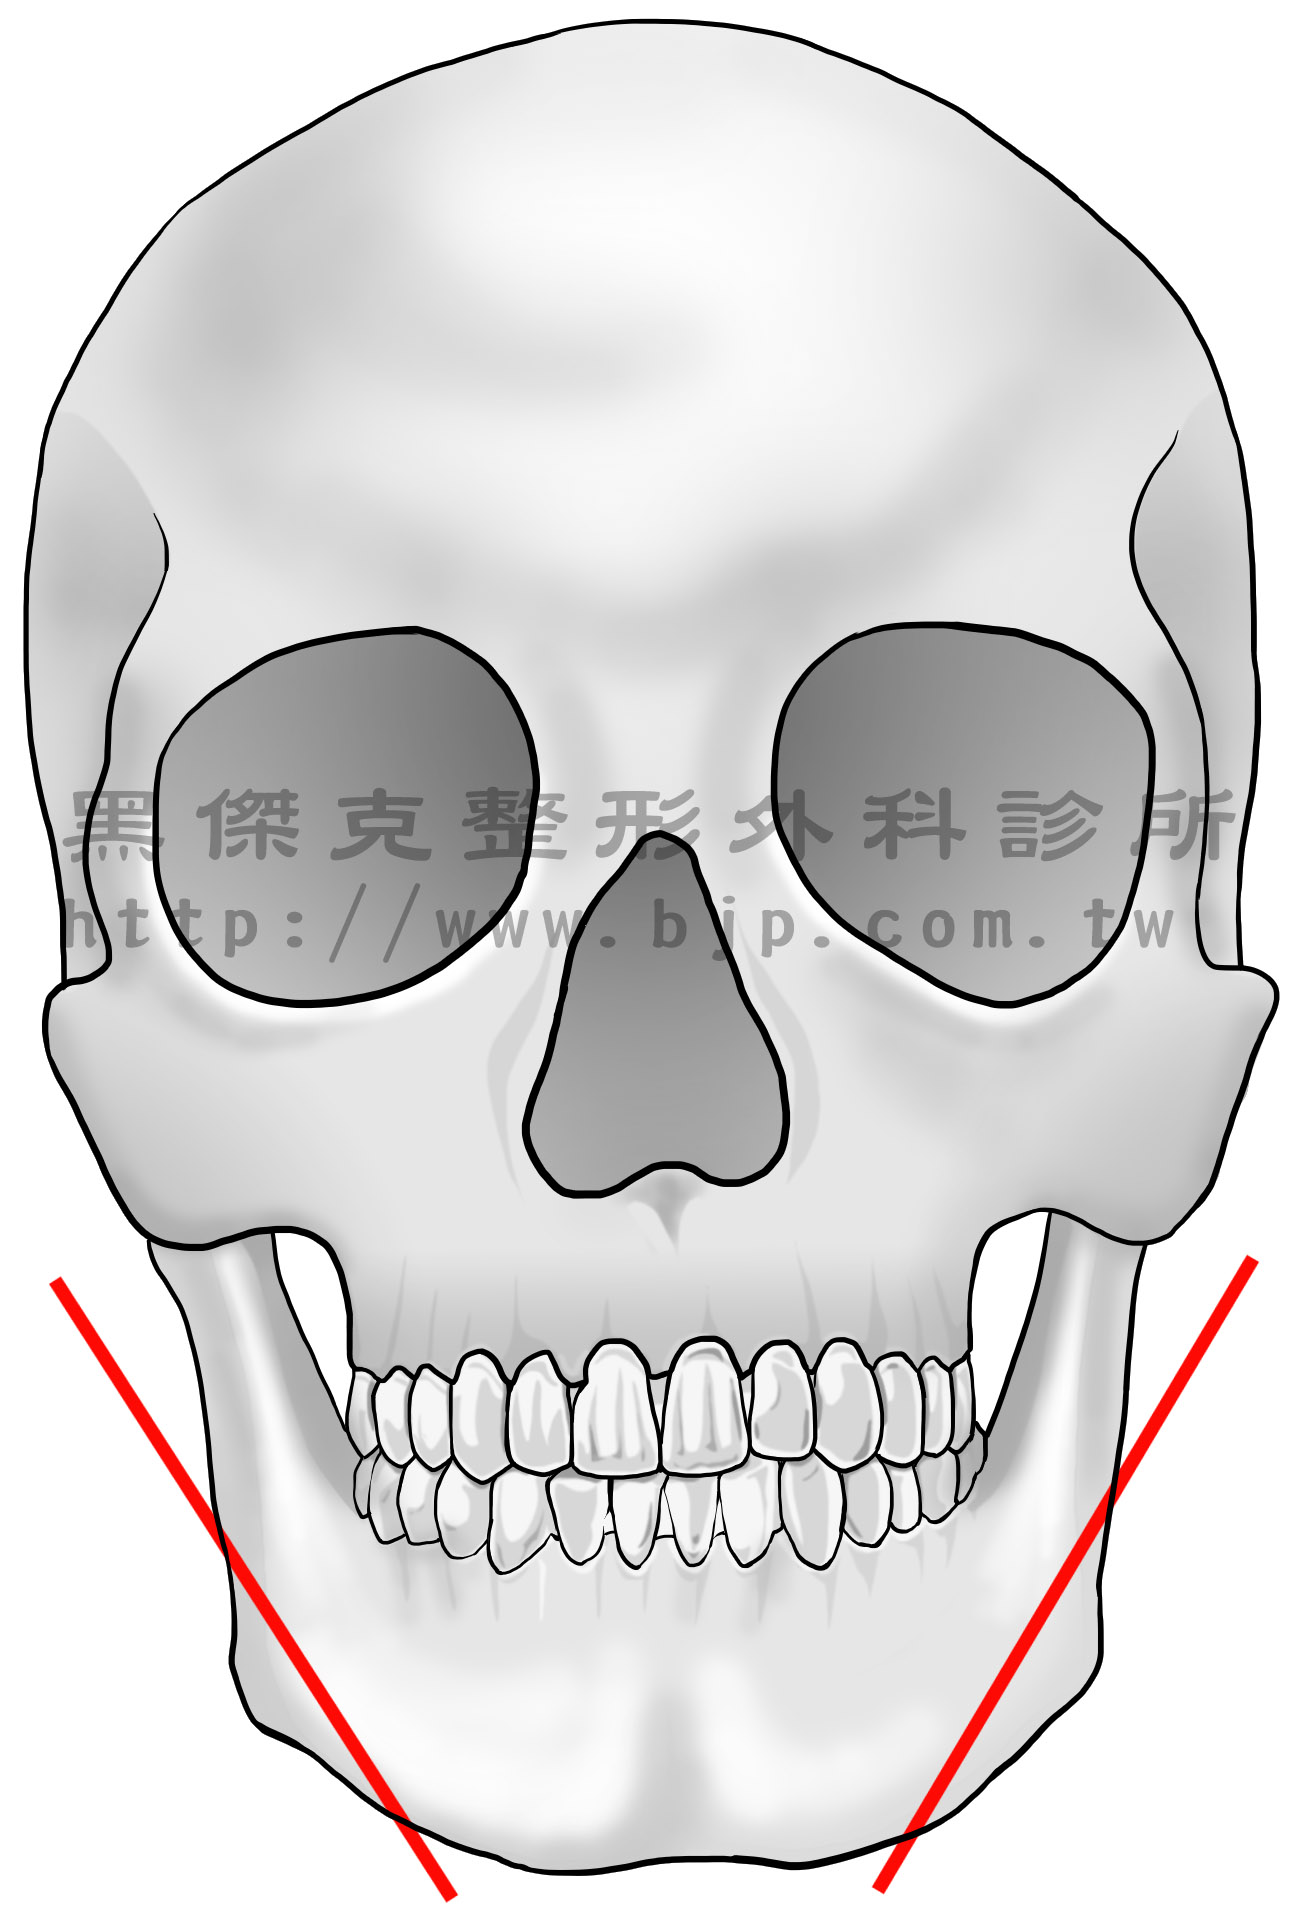 國字臉，手術從下牙齦兩側切開3~4公分的切口，然後將下頜骨轉角處剝離出來，把過於外凸的部分削除或磨除，再把較後凸、直角的骨頭切除，就不會再看到方形的骨頭突出，而轉角處就會呈現較圓滑的曲線，使下臉部的線條變得柔和。